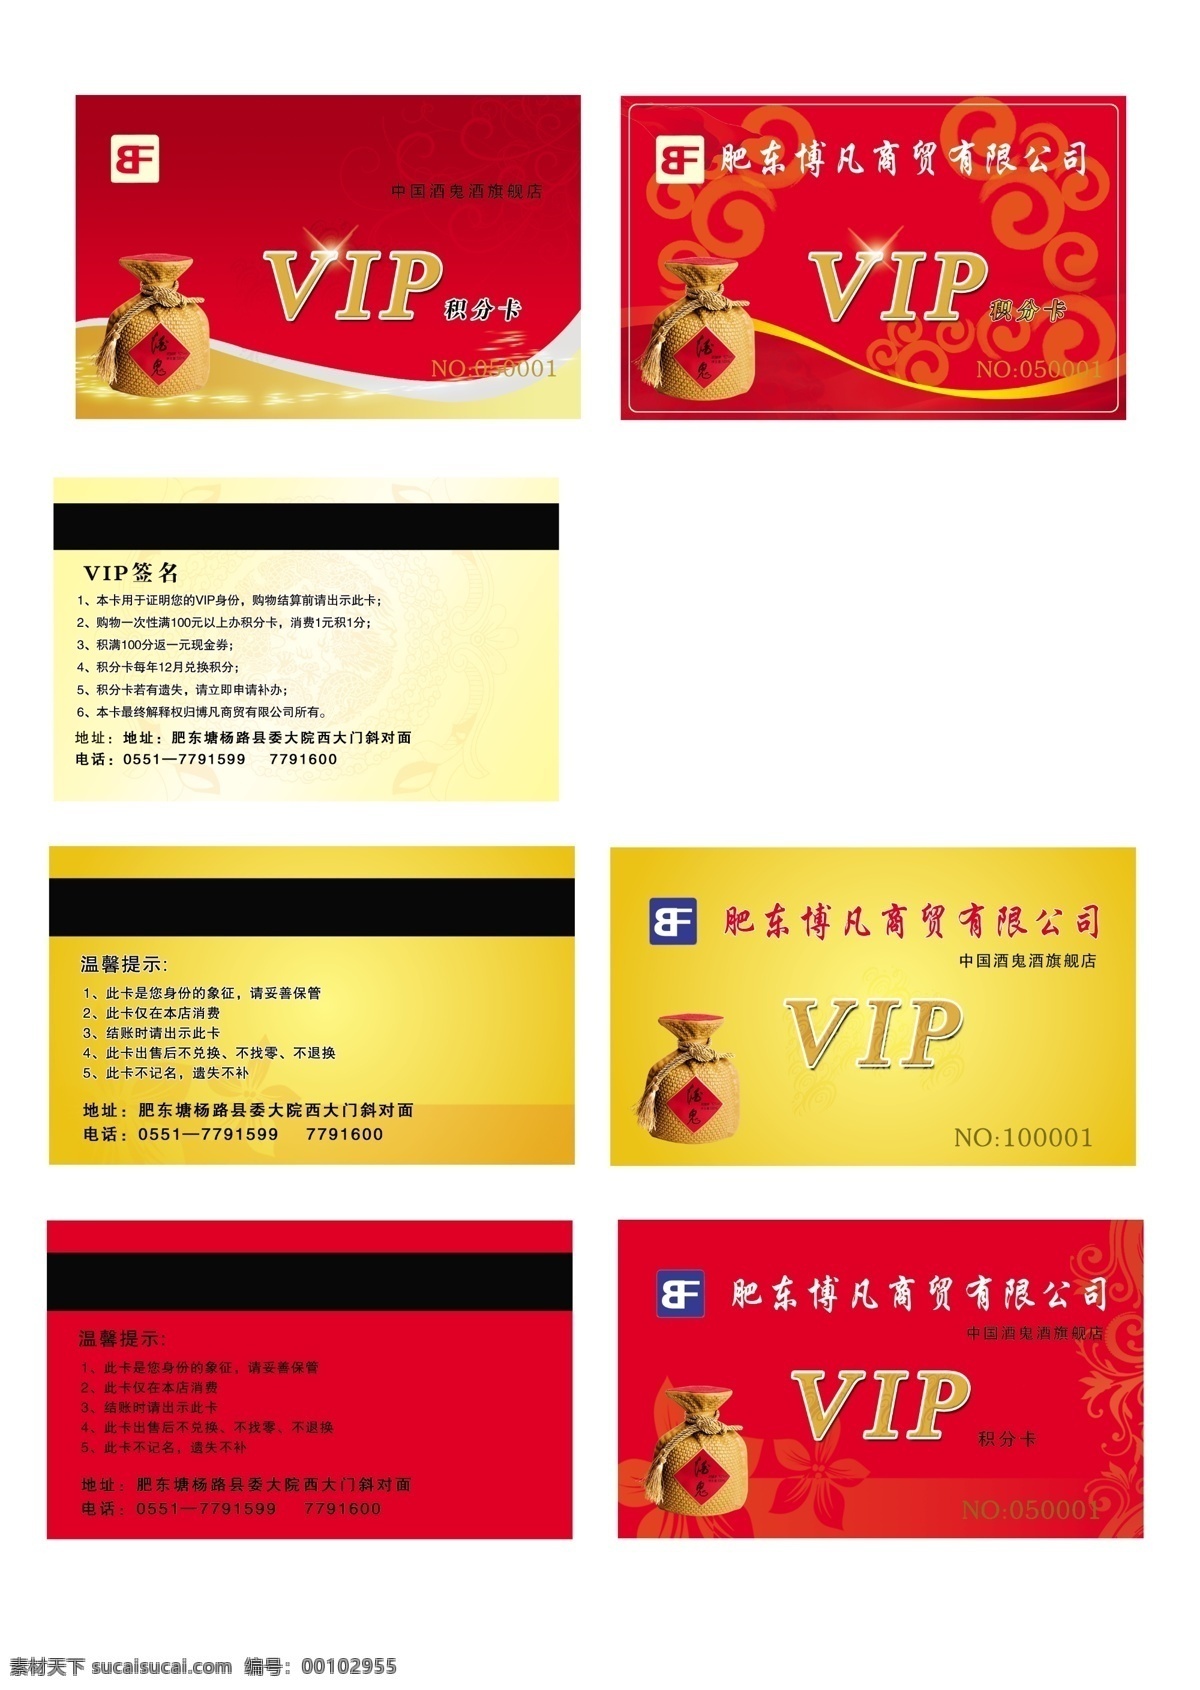 中国 酒鬼 酒 vip 卡 积分卡 背景花纹 博凡 中国酒鬼酒 名片设计 广告设计模板 源文件